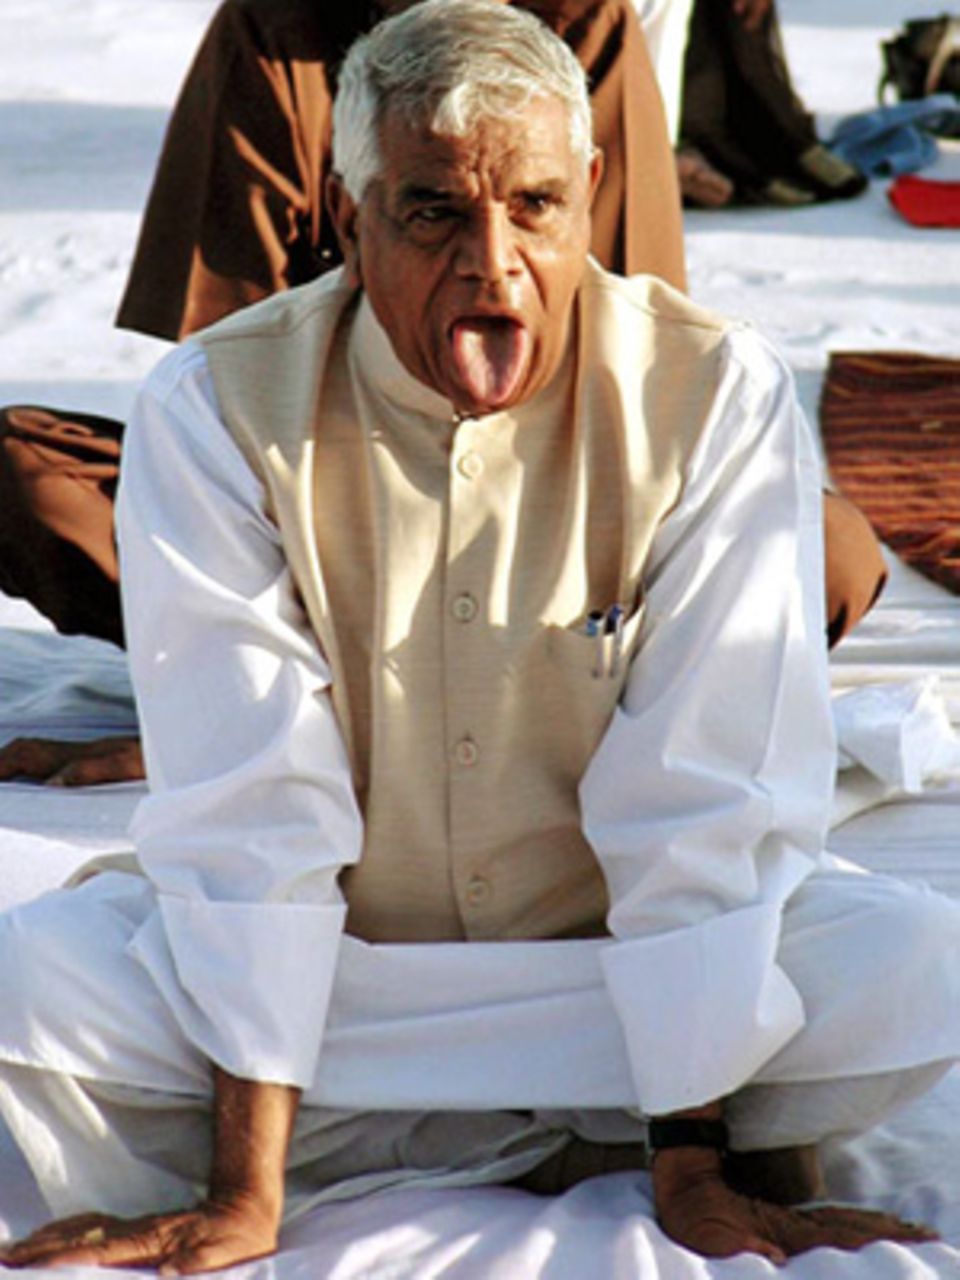 Politiker Babulal Gaur von der Bharatiya-Janata-Partei, der hier an einer öffentlichen Yoga-Zeremonie teilnimmt